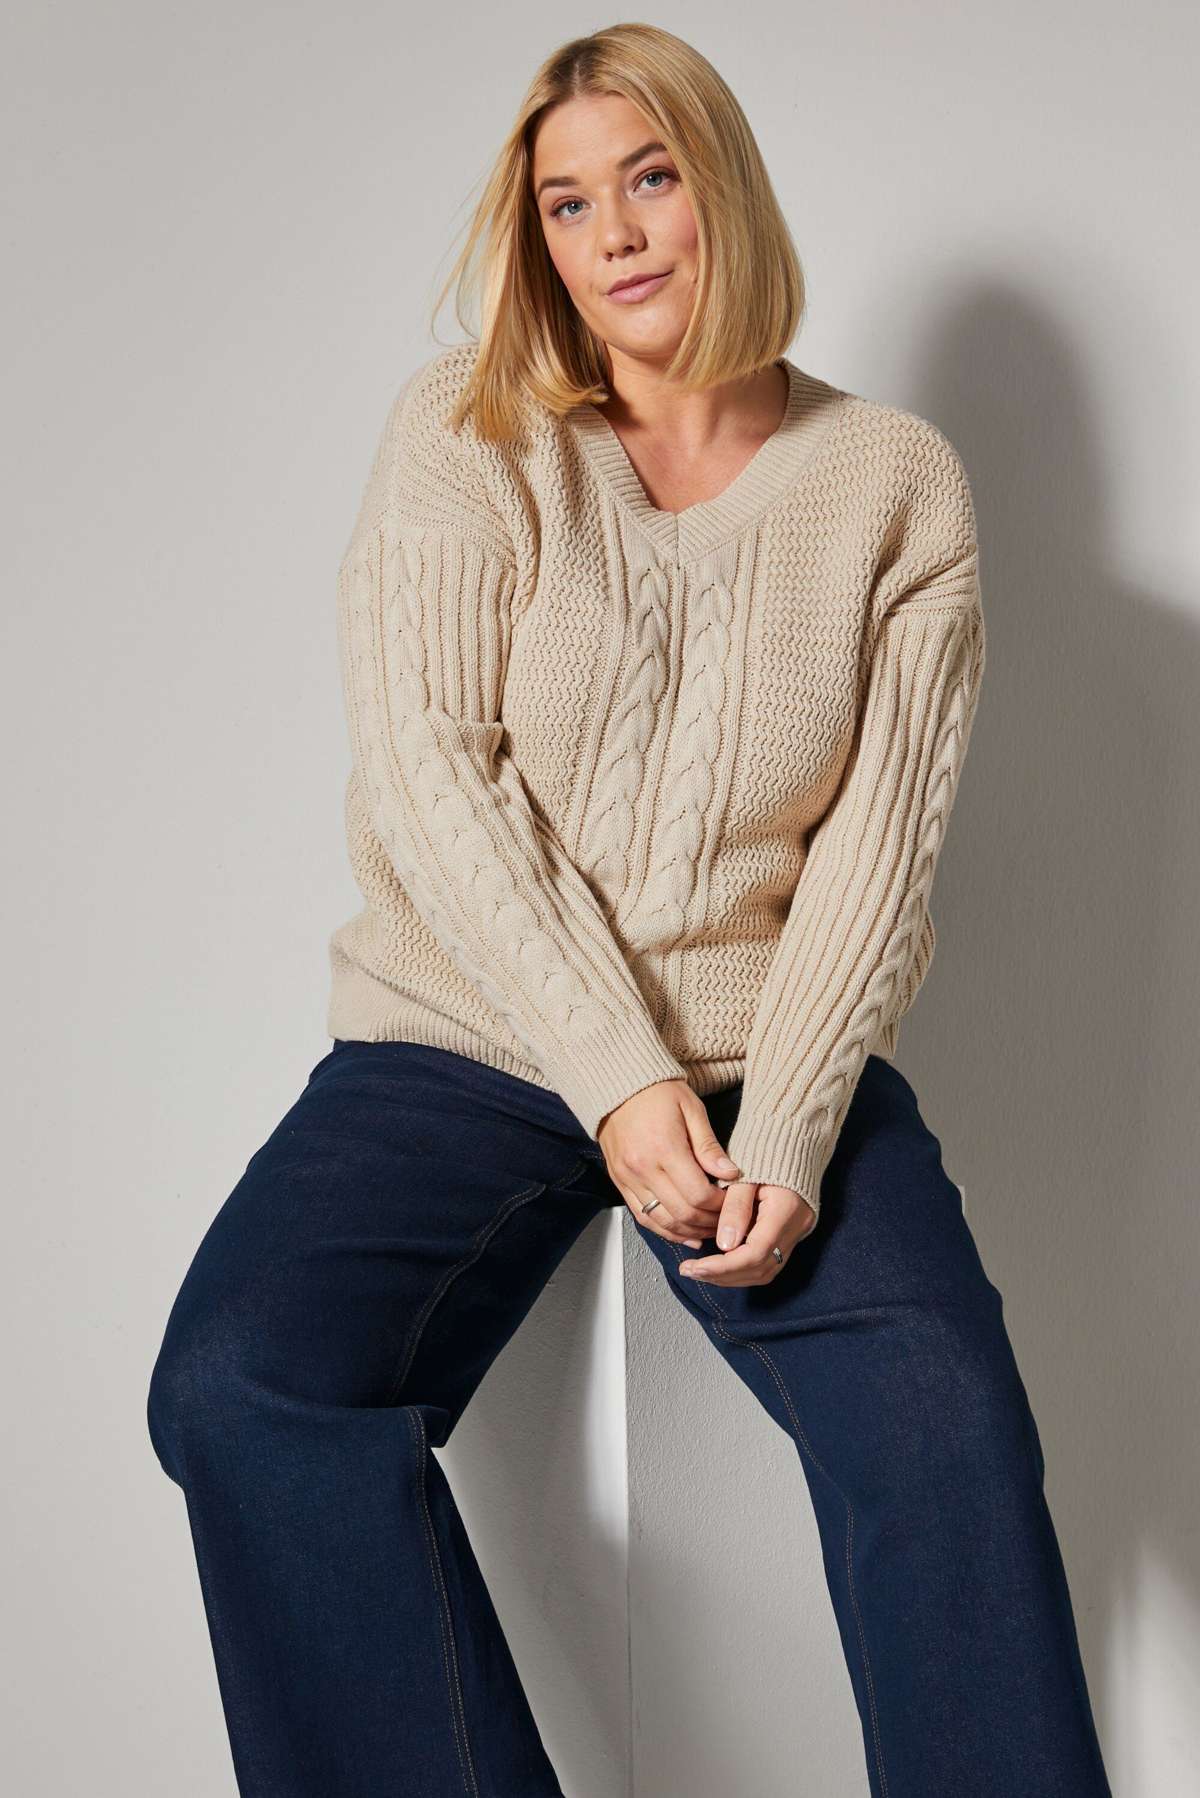 Вязаный свитер-пуловер оверсайз косой вязки с длинным рукавом